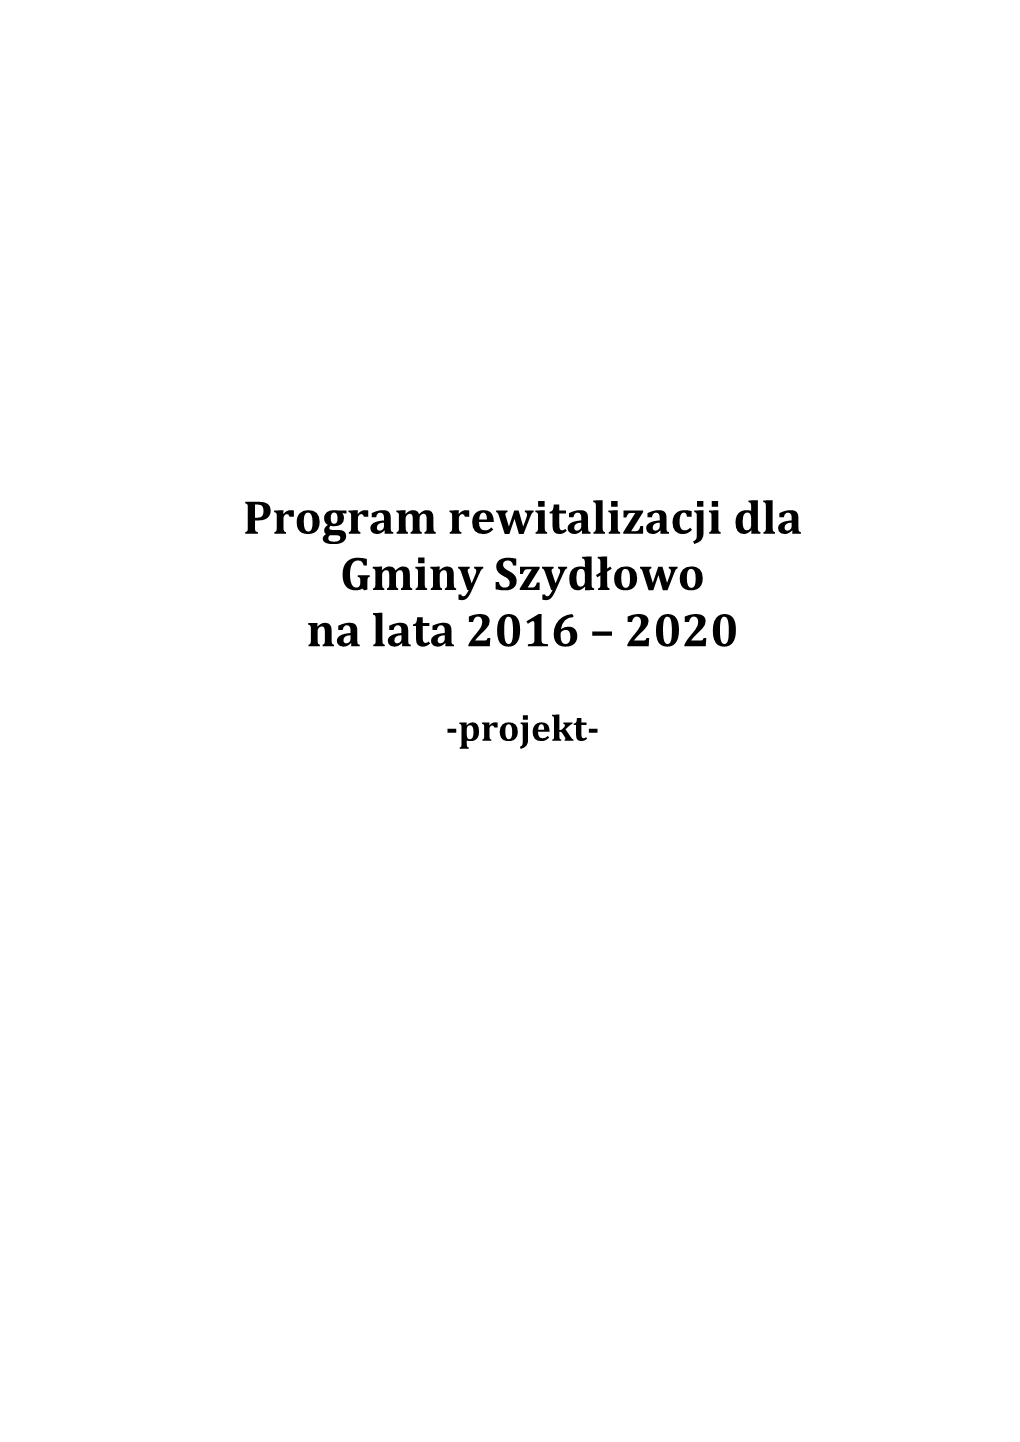 Program Rewitalizacji Dla Gminy Szydłowo Na Lata 2016 – 2020